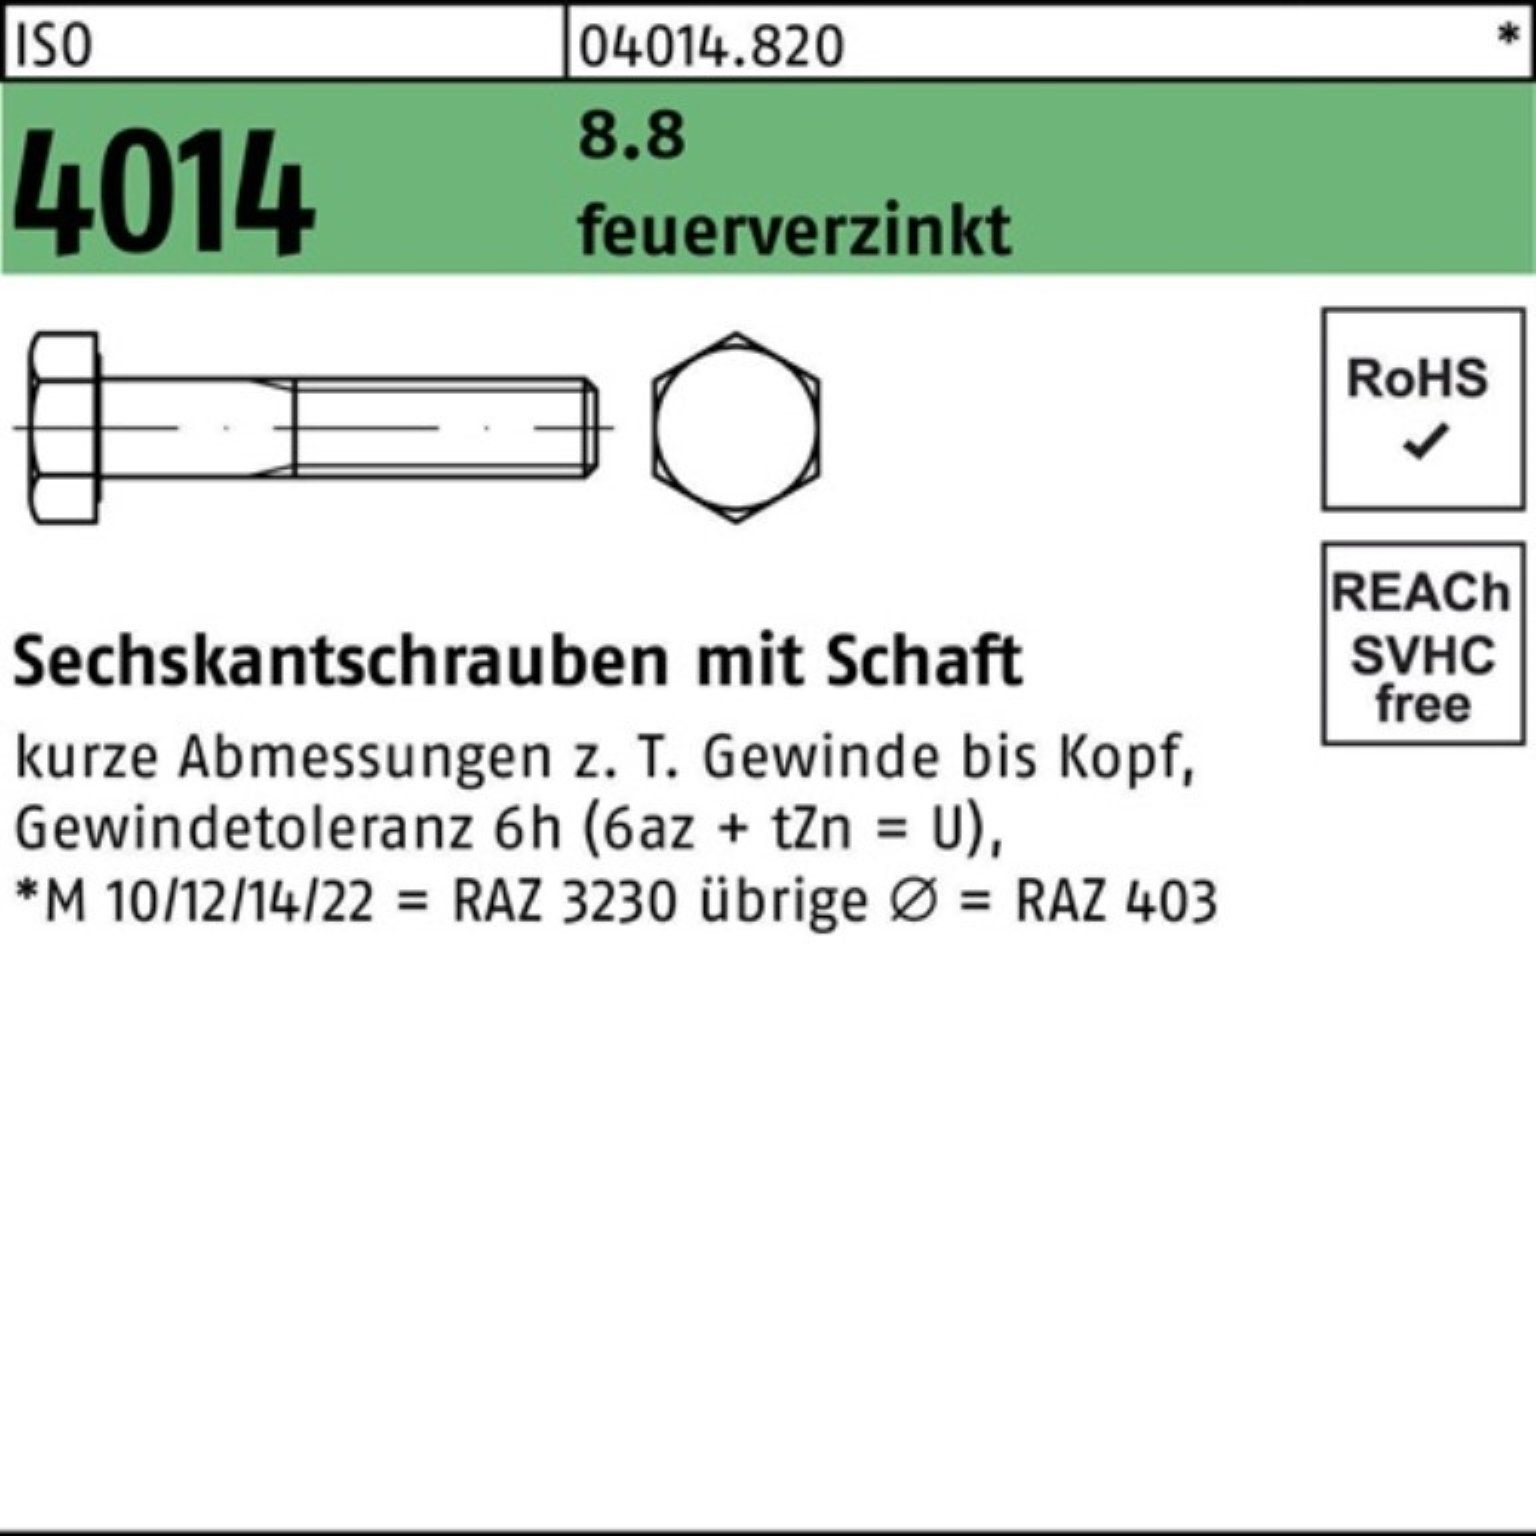 Bufab Sechskantschraube 1 200 8.8 ISO feuerverz. 100er Pack Schaft 4014 M30x Sechskantschraube